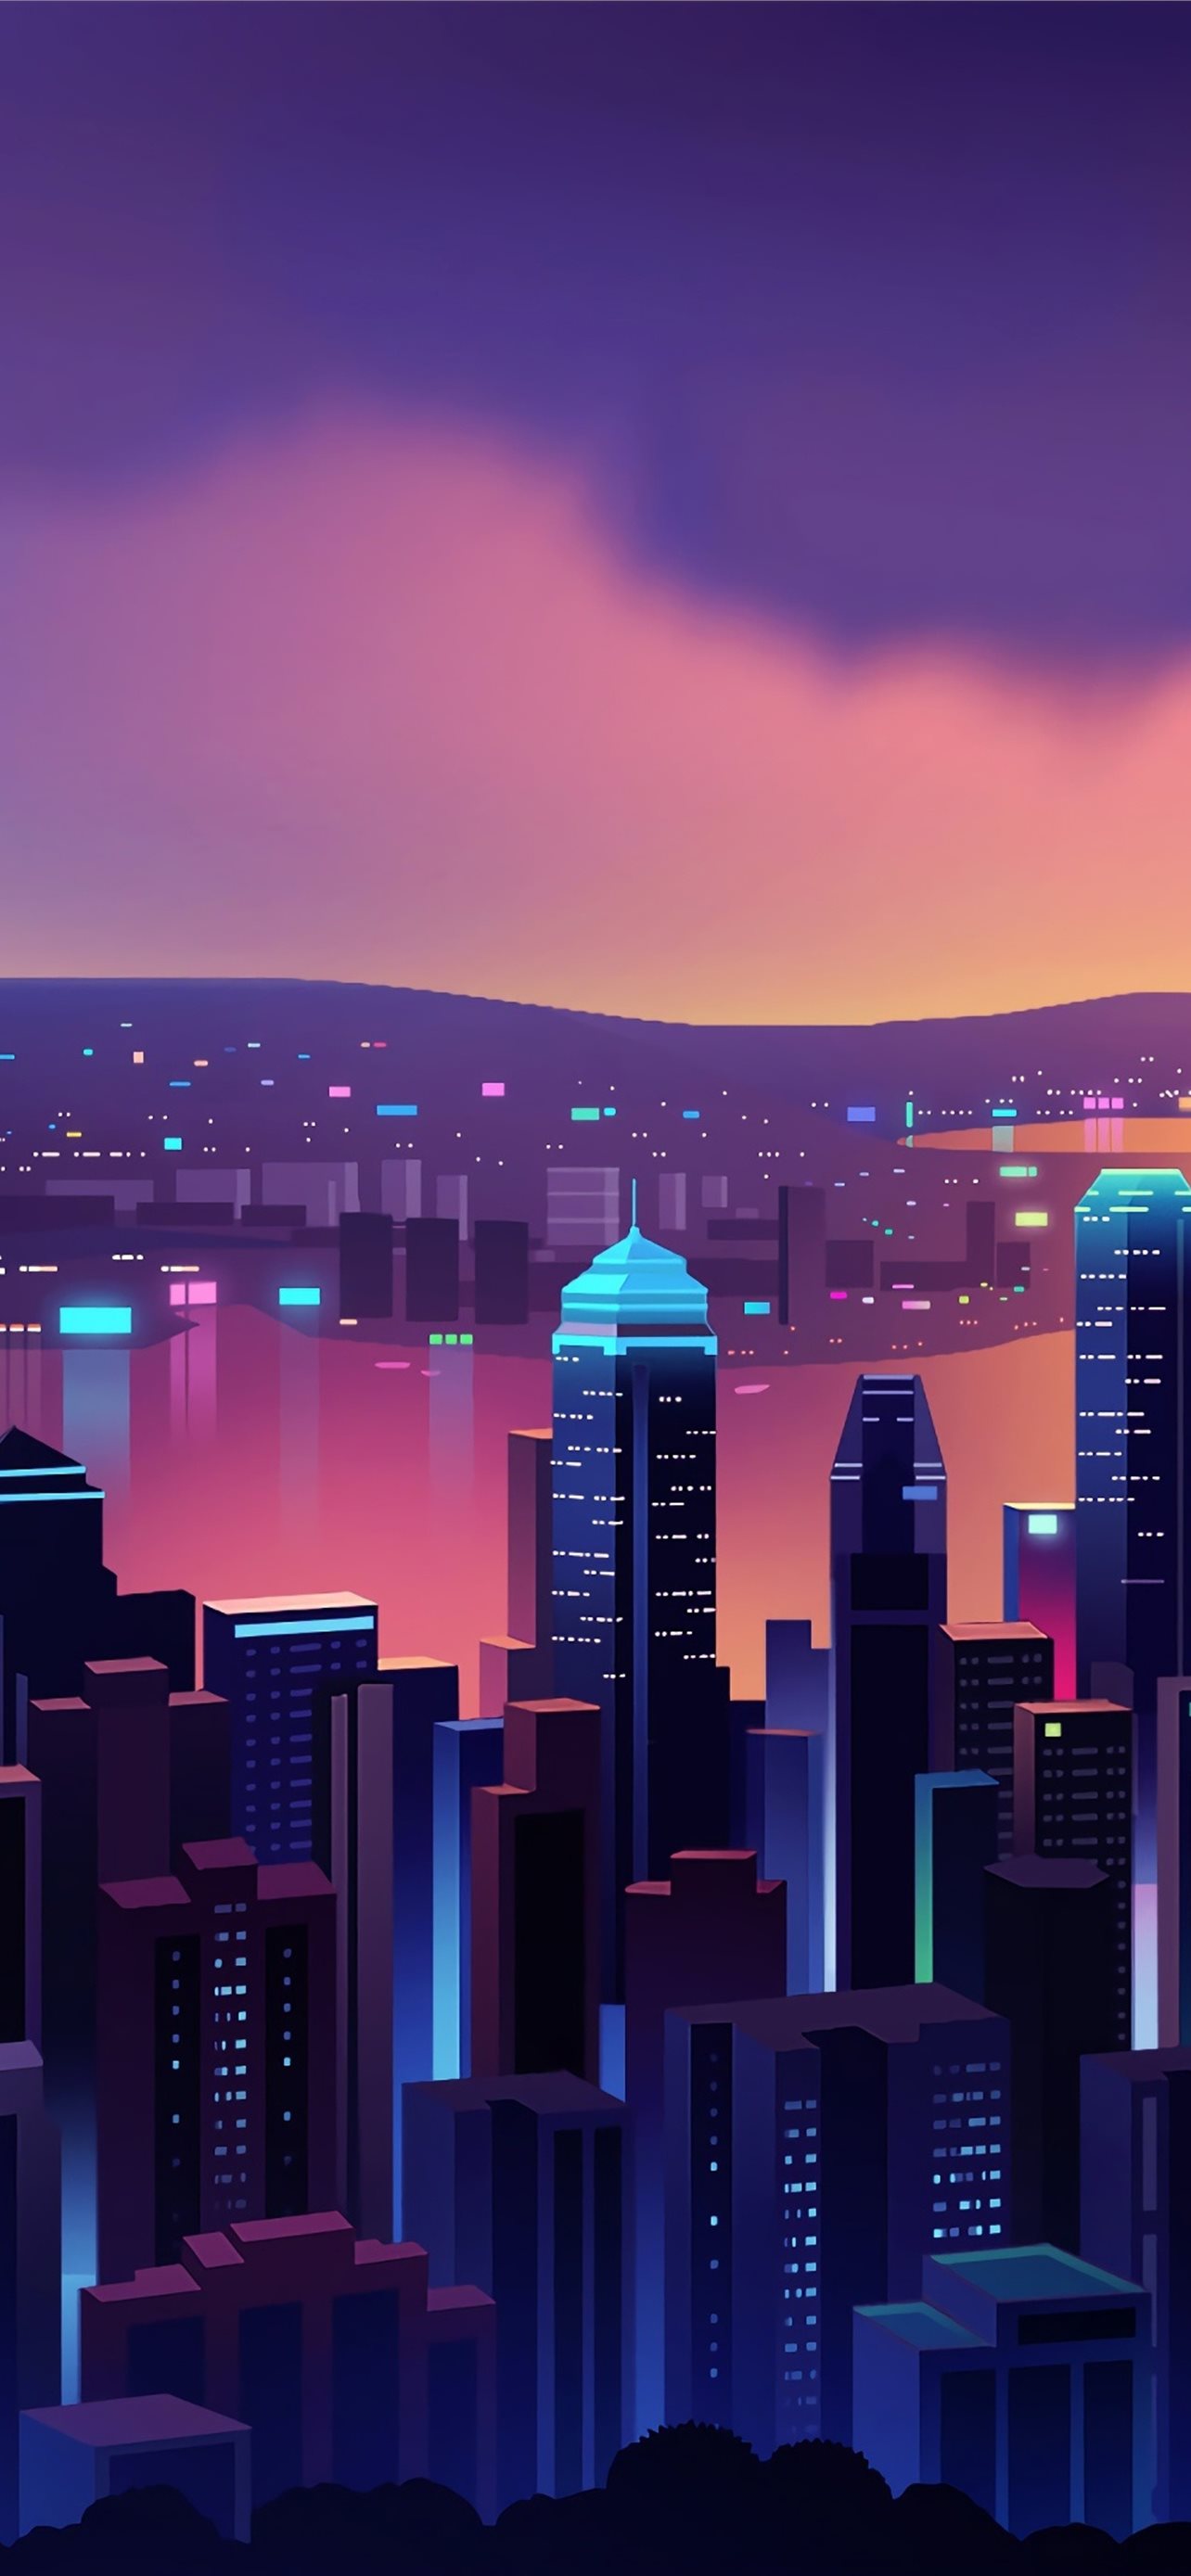 Hình nền Sony Xperia Hong Kong sẽ đưa bạn lạc vào thế giới đầy màu sắc và phong cảnh đẹp tuyệt vời của thành phố này. Hãy cùng khám phá hình ảnh này để có những trải nghiệm tuyệt vời nhất nhé!